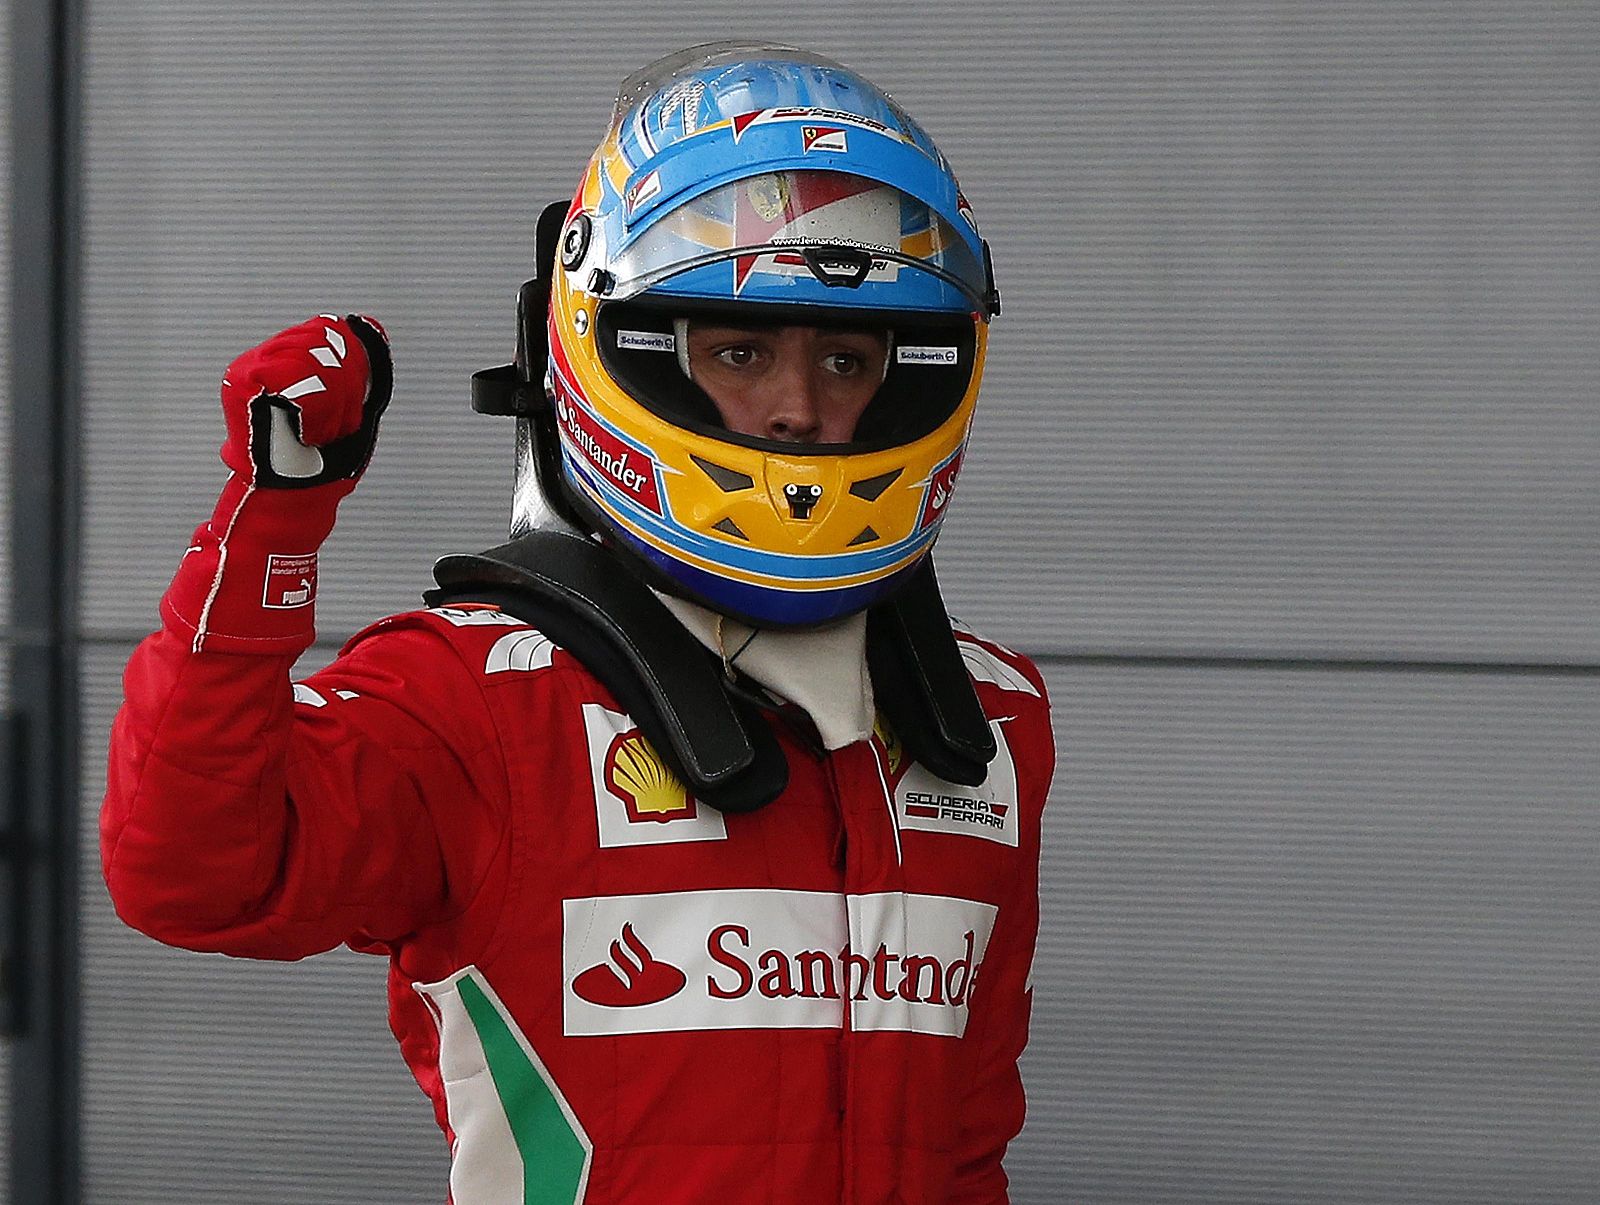 El piloto español de Ferrari, Fernando Alonso, levanta el puño en señal de alegría tras hacerse con la 'pole' en el GP de Gran Bretaña.